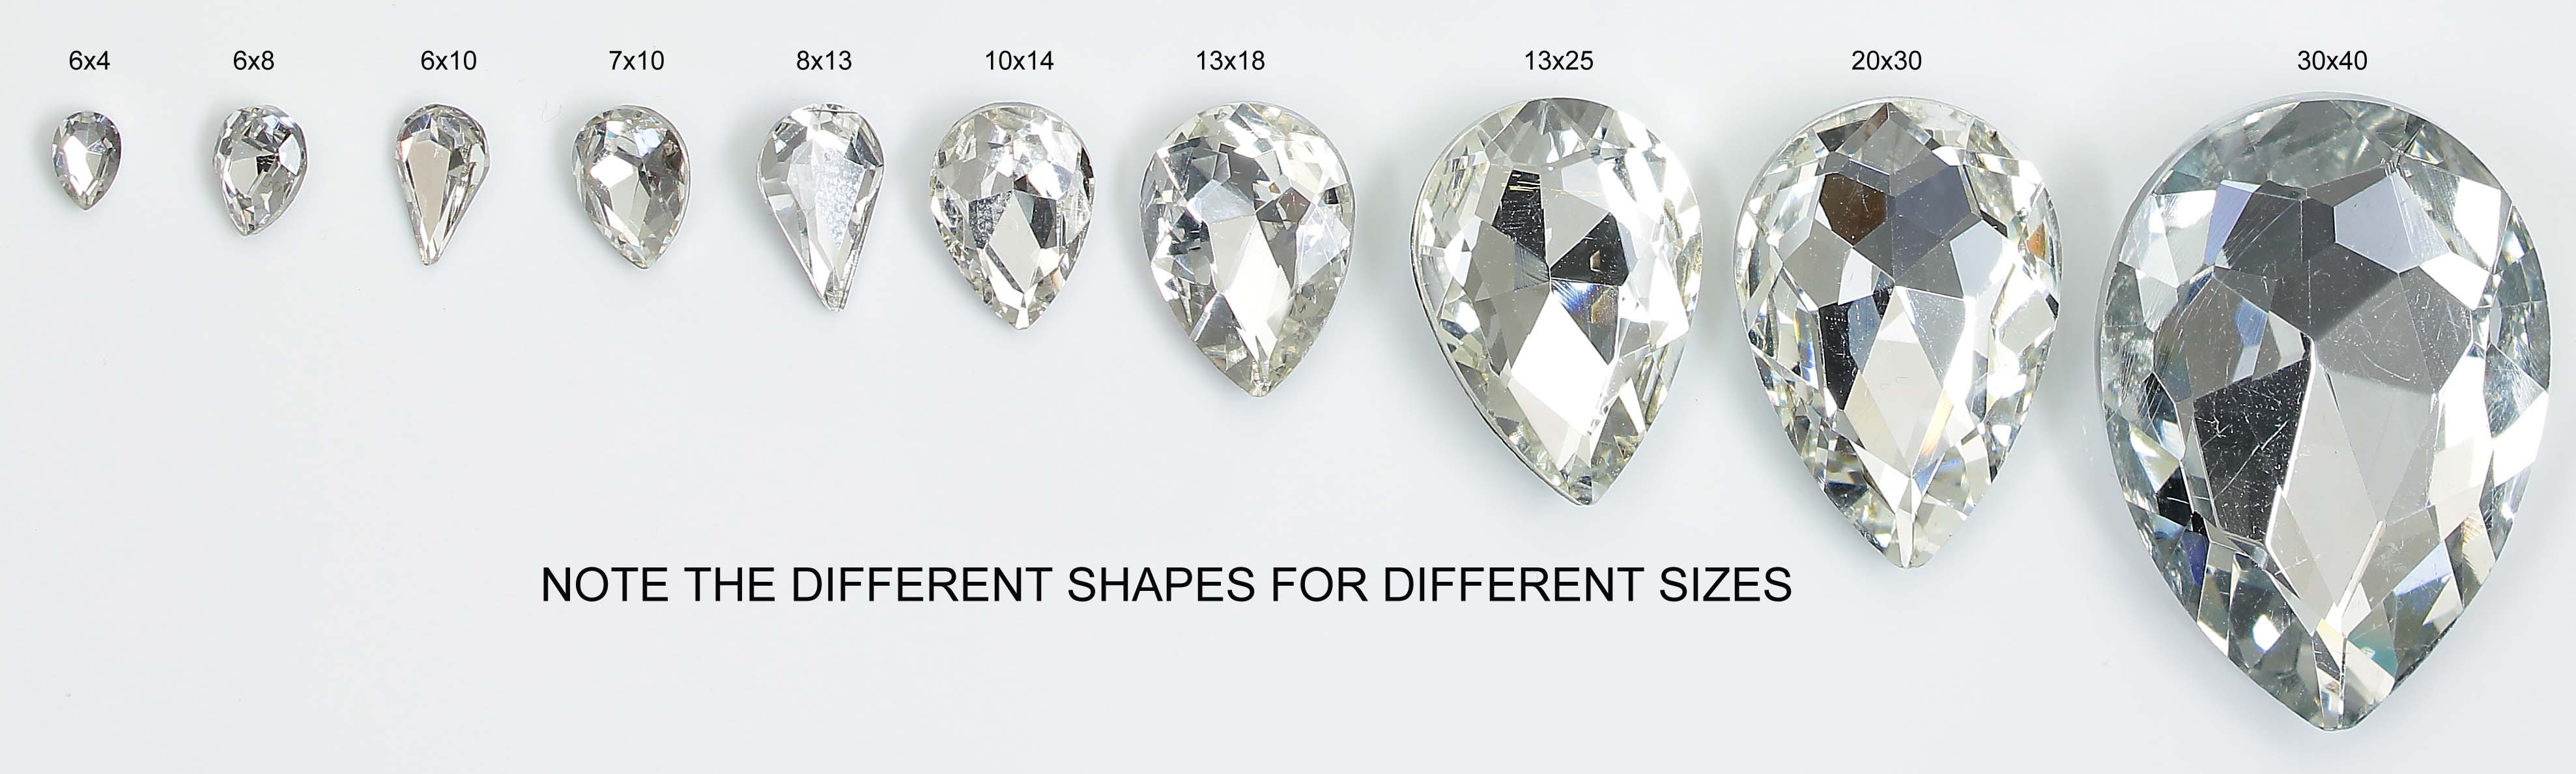 4320 & 4300 GlitzStone Crystal Pear Fancy Rhinestones